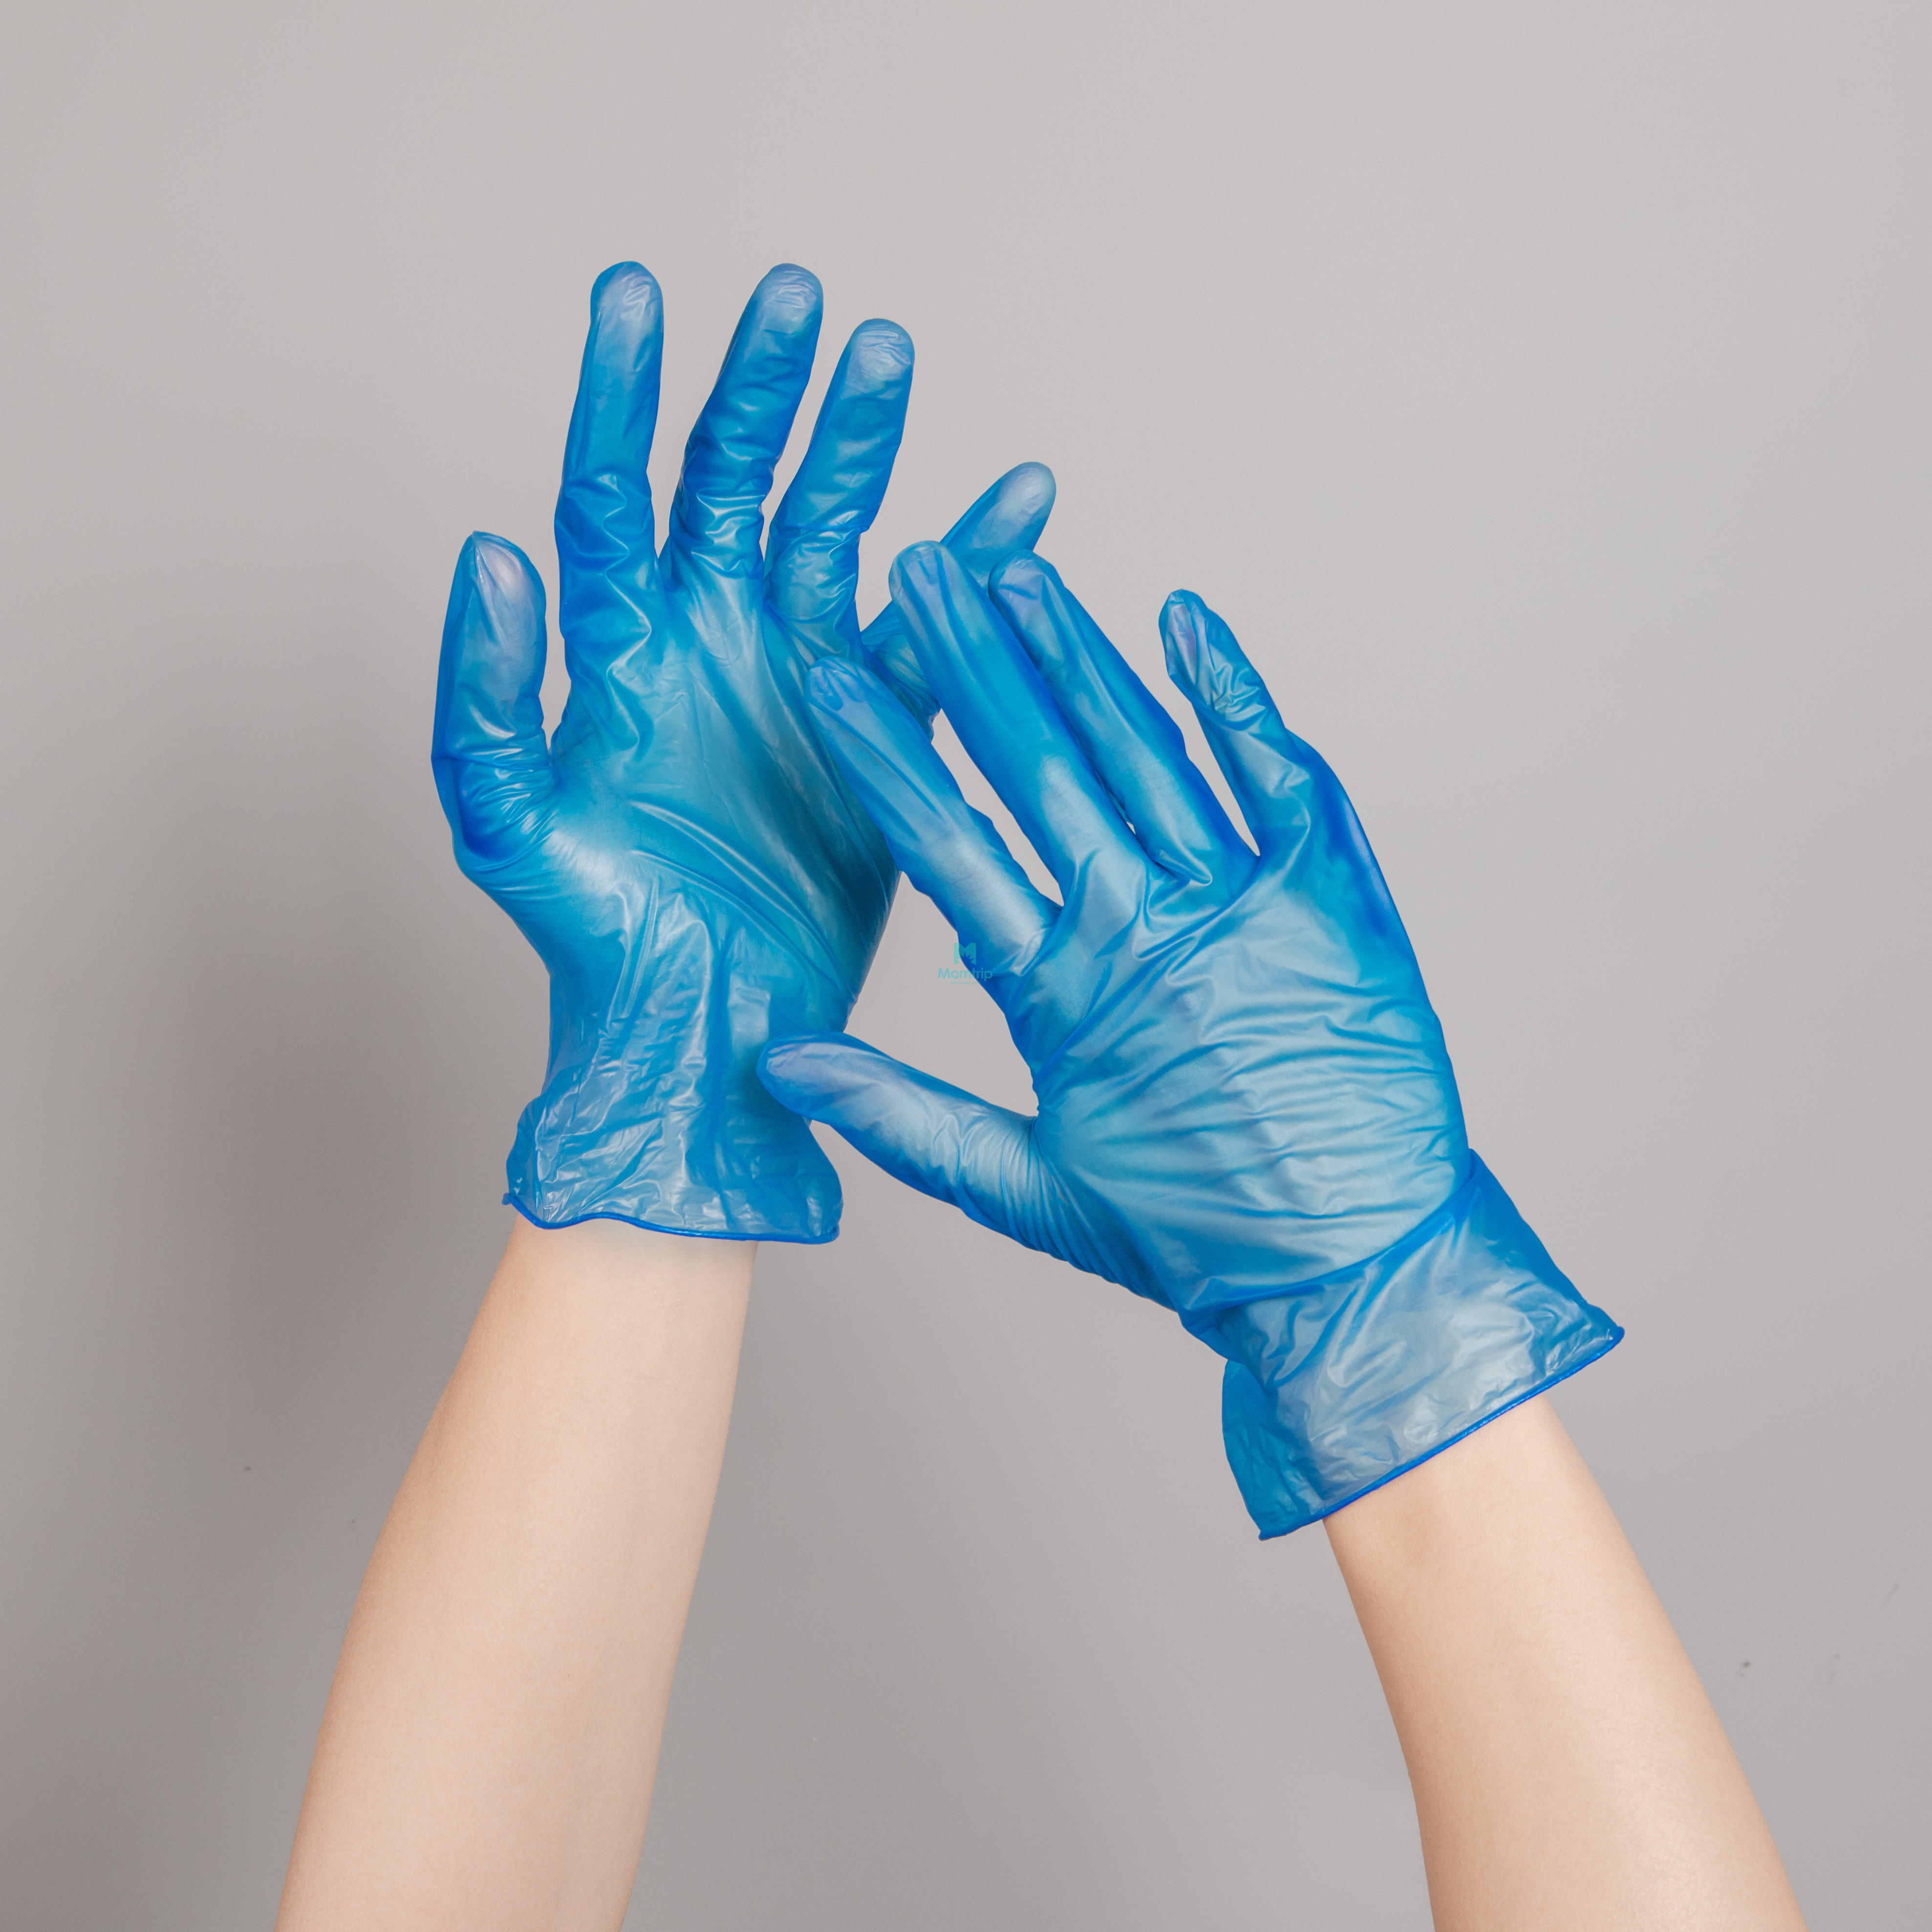 100 Pcs Sterile Procedure Surgical Disposable Powder Free Vinyl Gloves